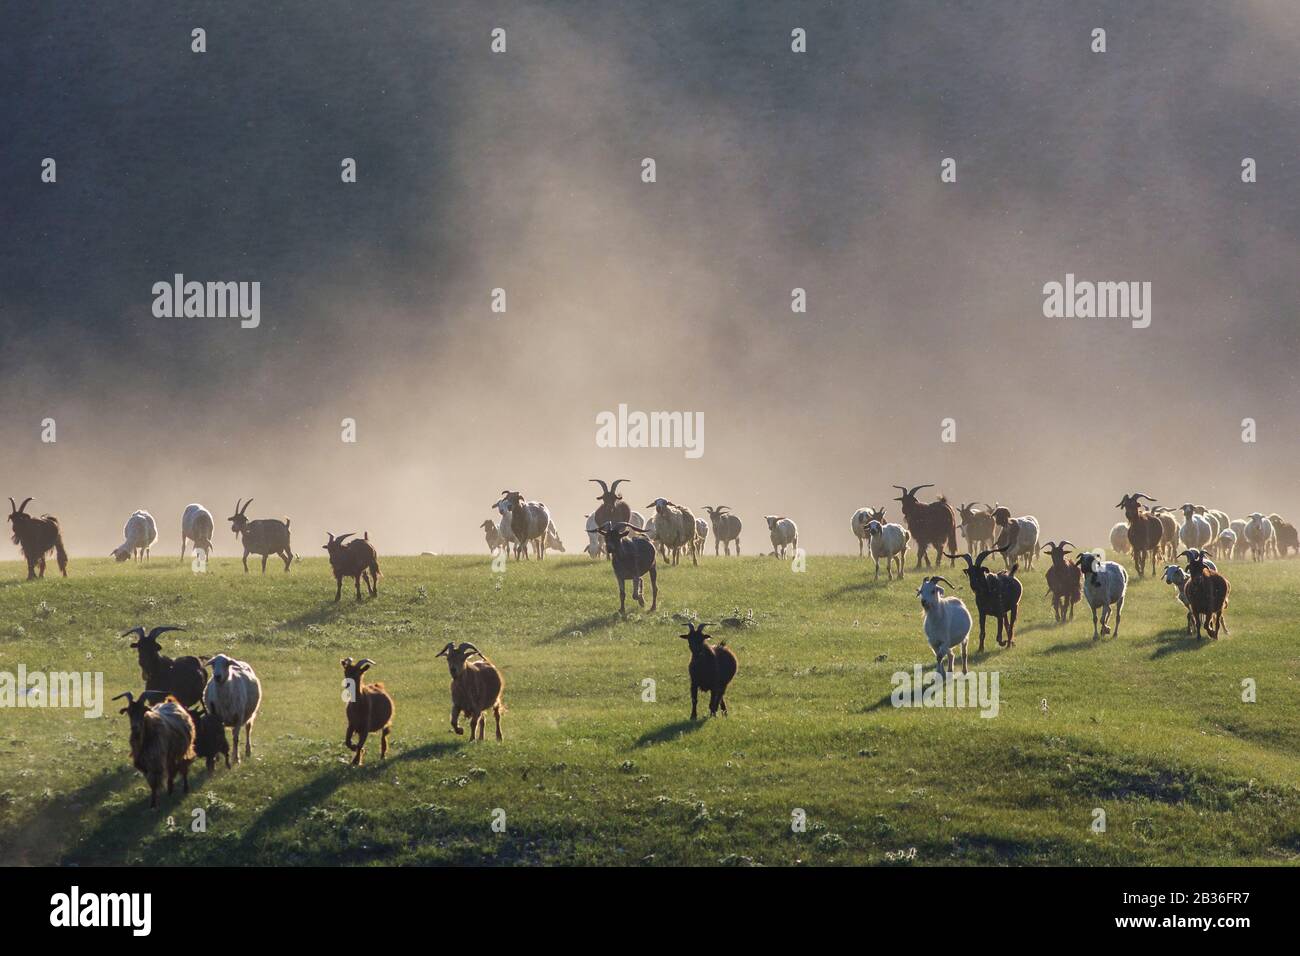 Mongolie, province de Bulgan, près de Namnang, troupeau de chèvres et de moutons dans la steppe herbacée Banque D'Images